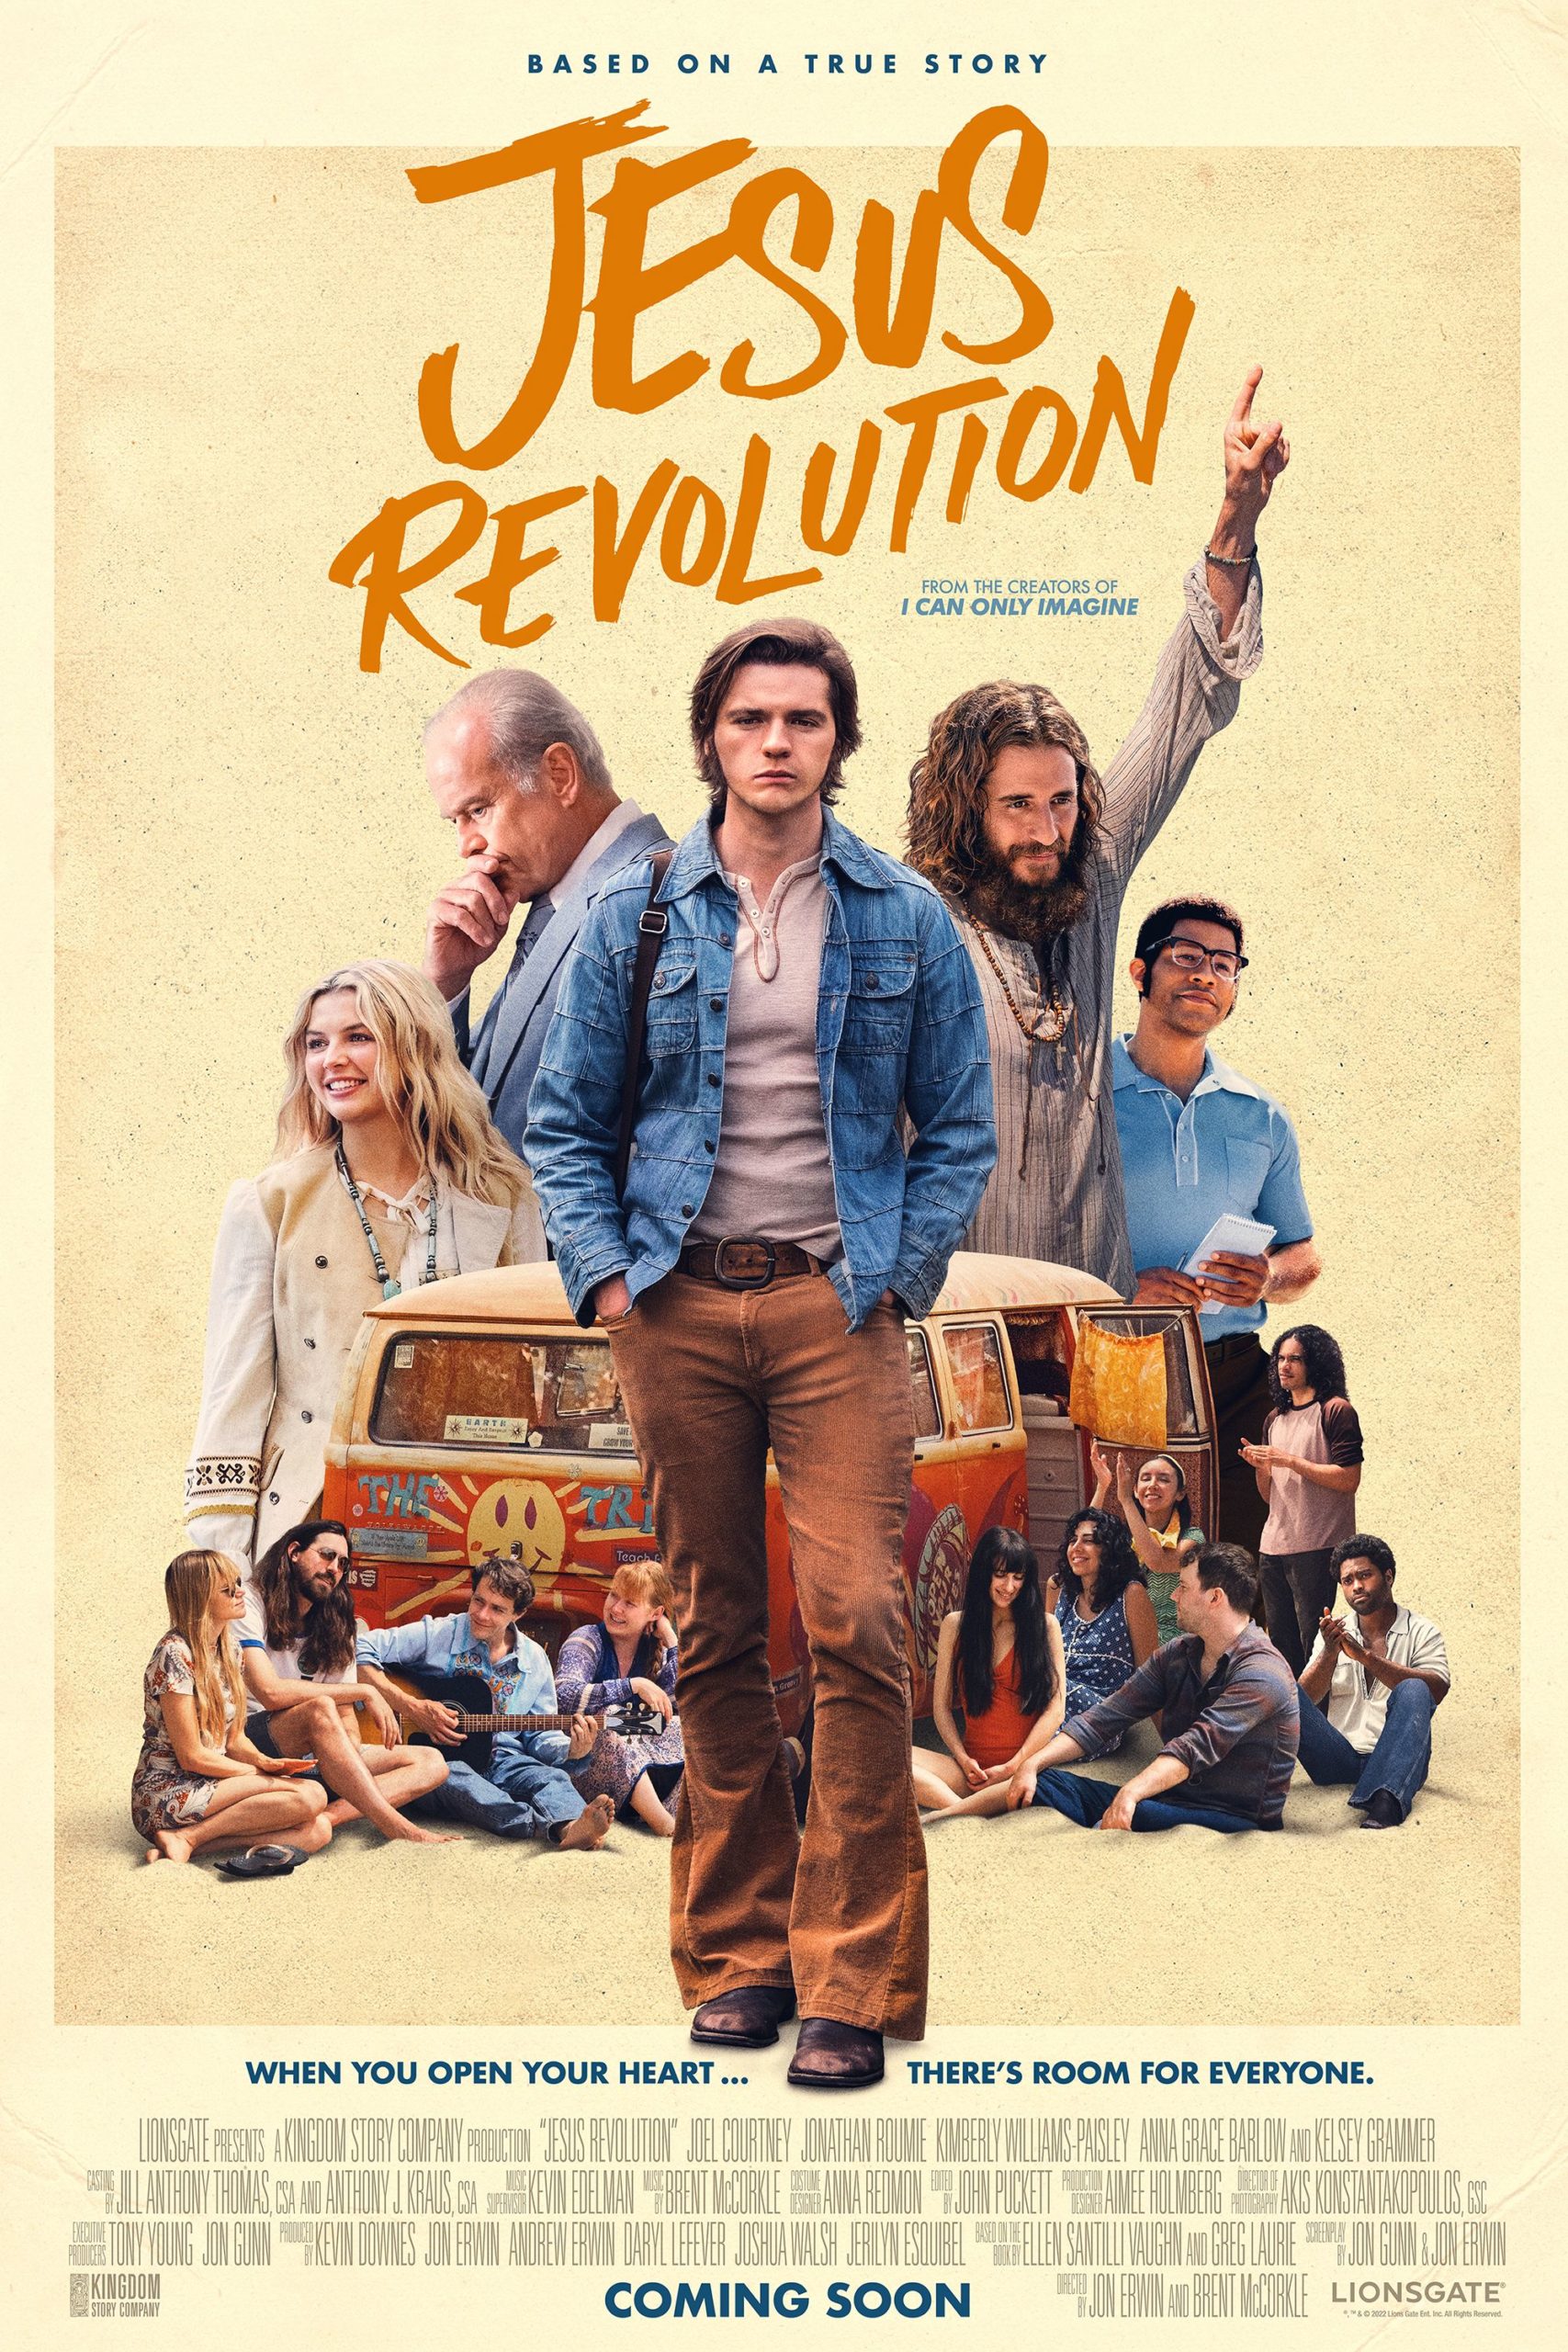 Cover Art for "Jesus Revolution"